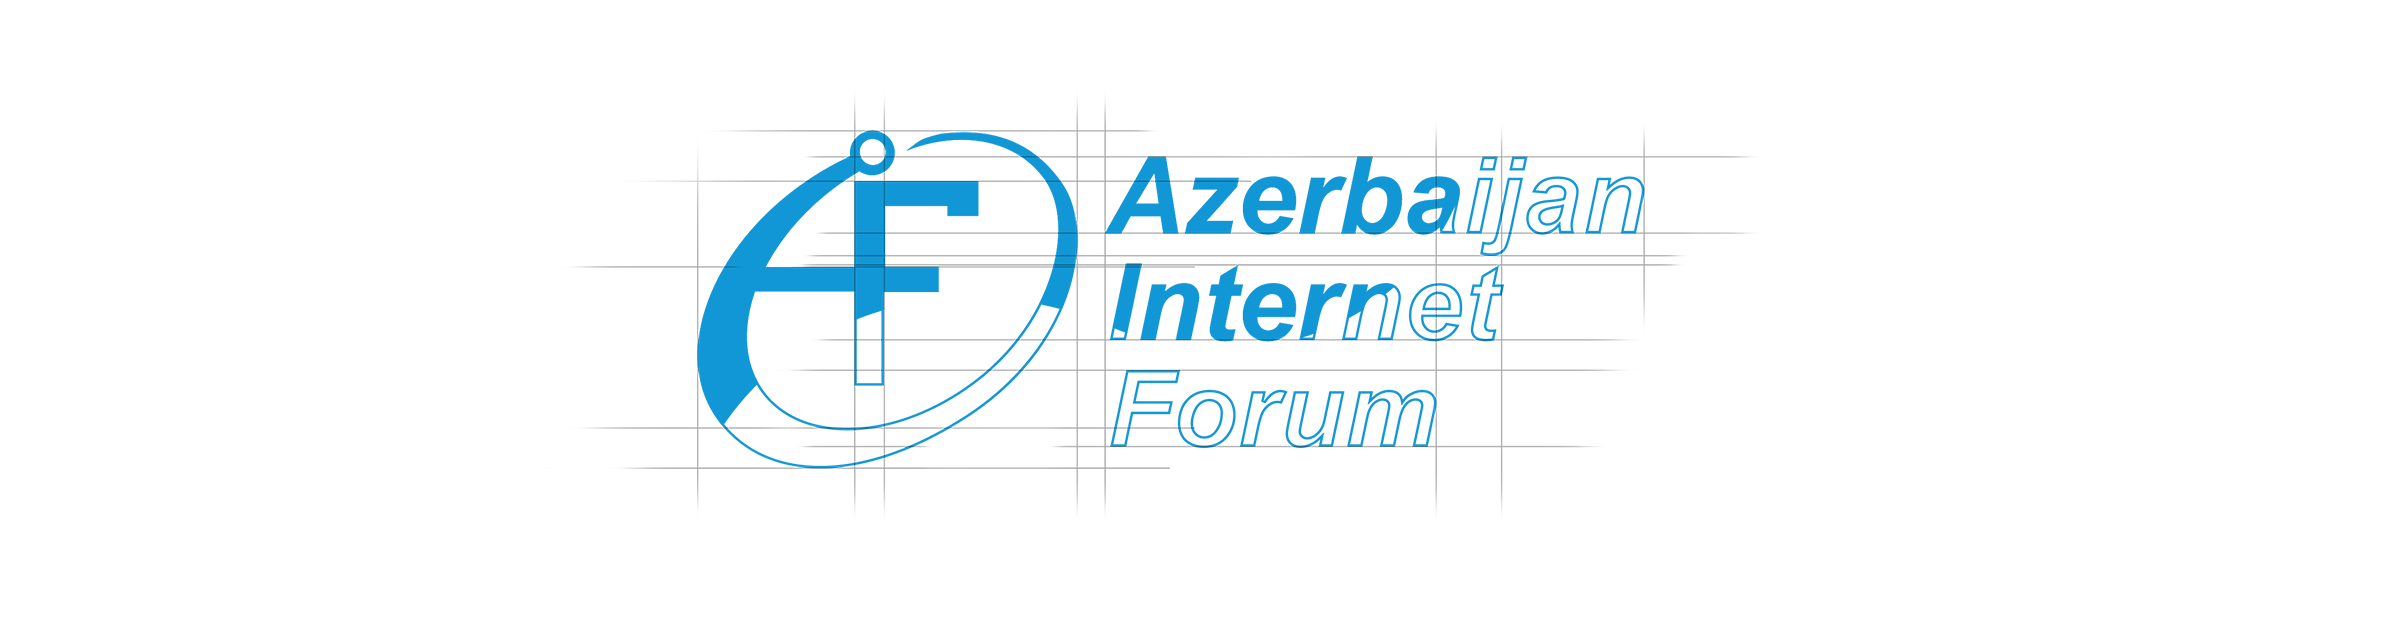 Azərbaycan İnternet Forumu - Logosu